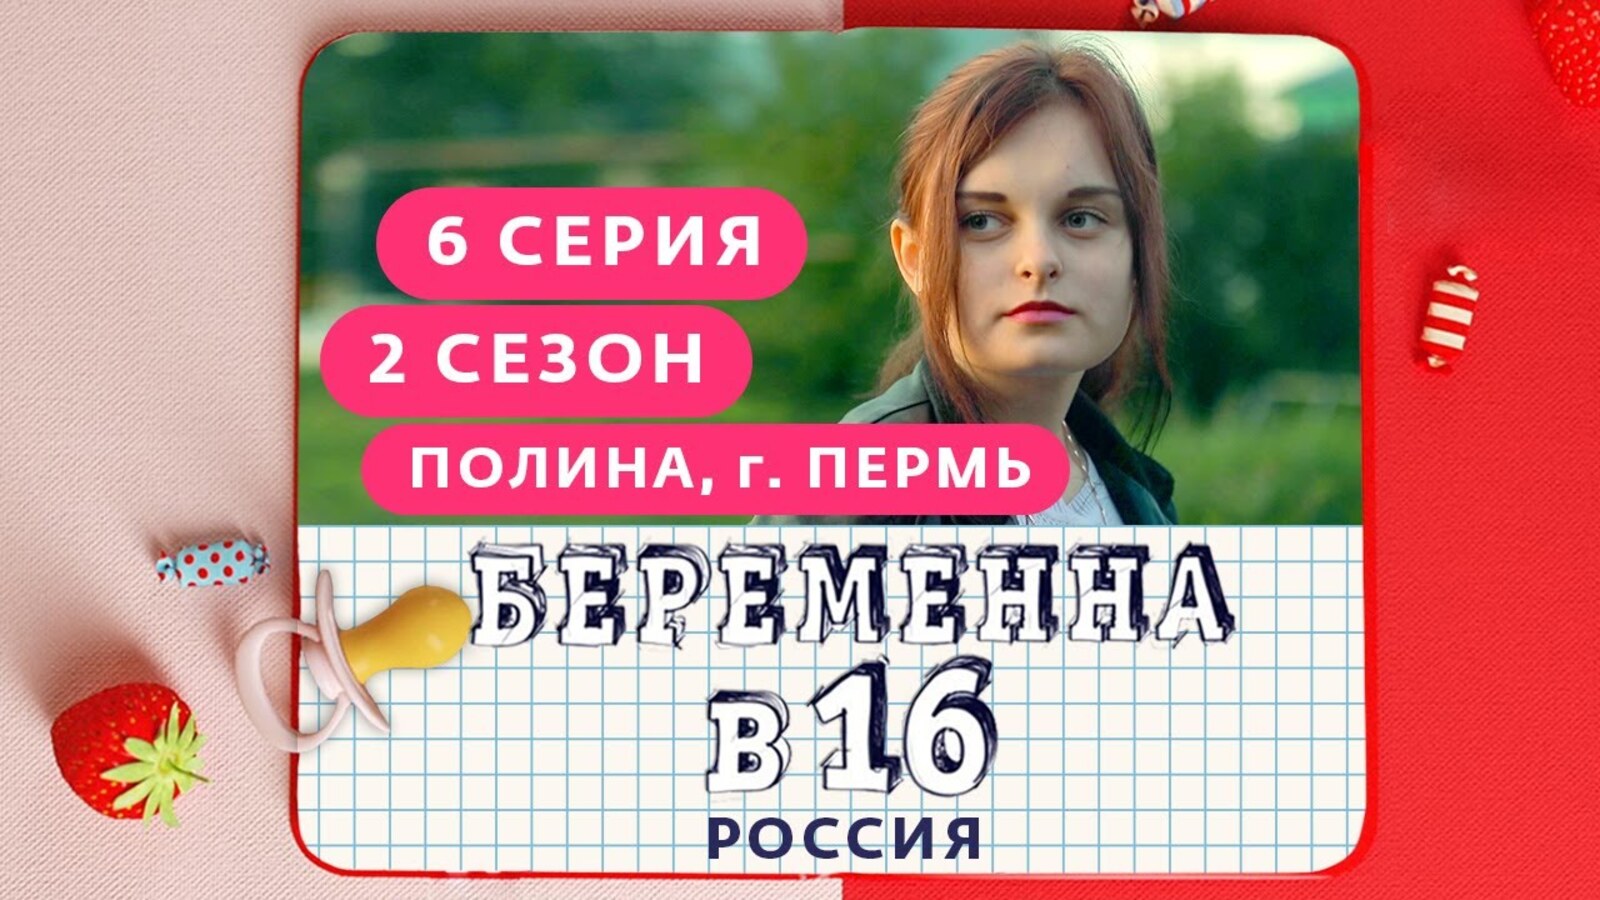 Беременна в 16 учитель информатики на русском. Беременна в 16 русская версия.